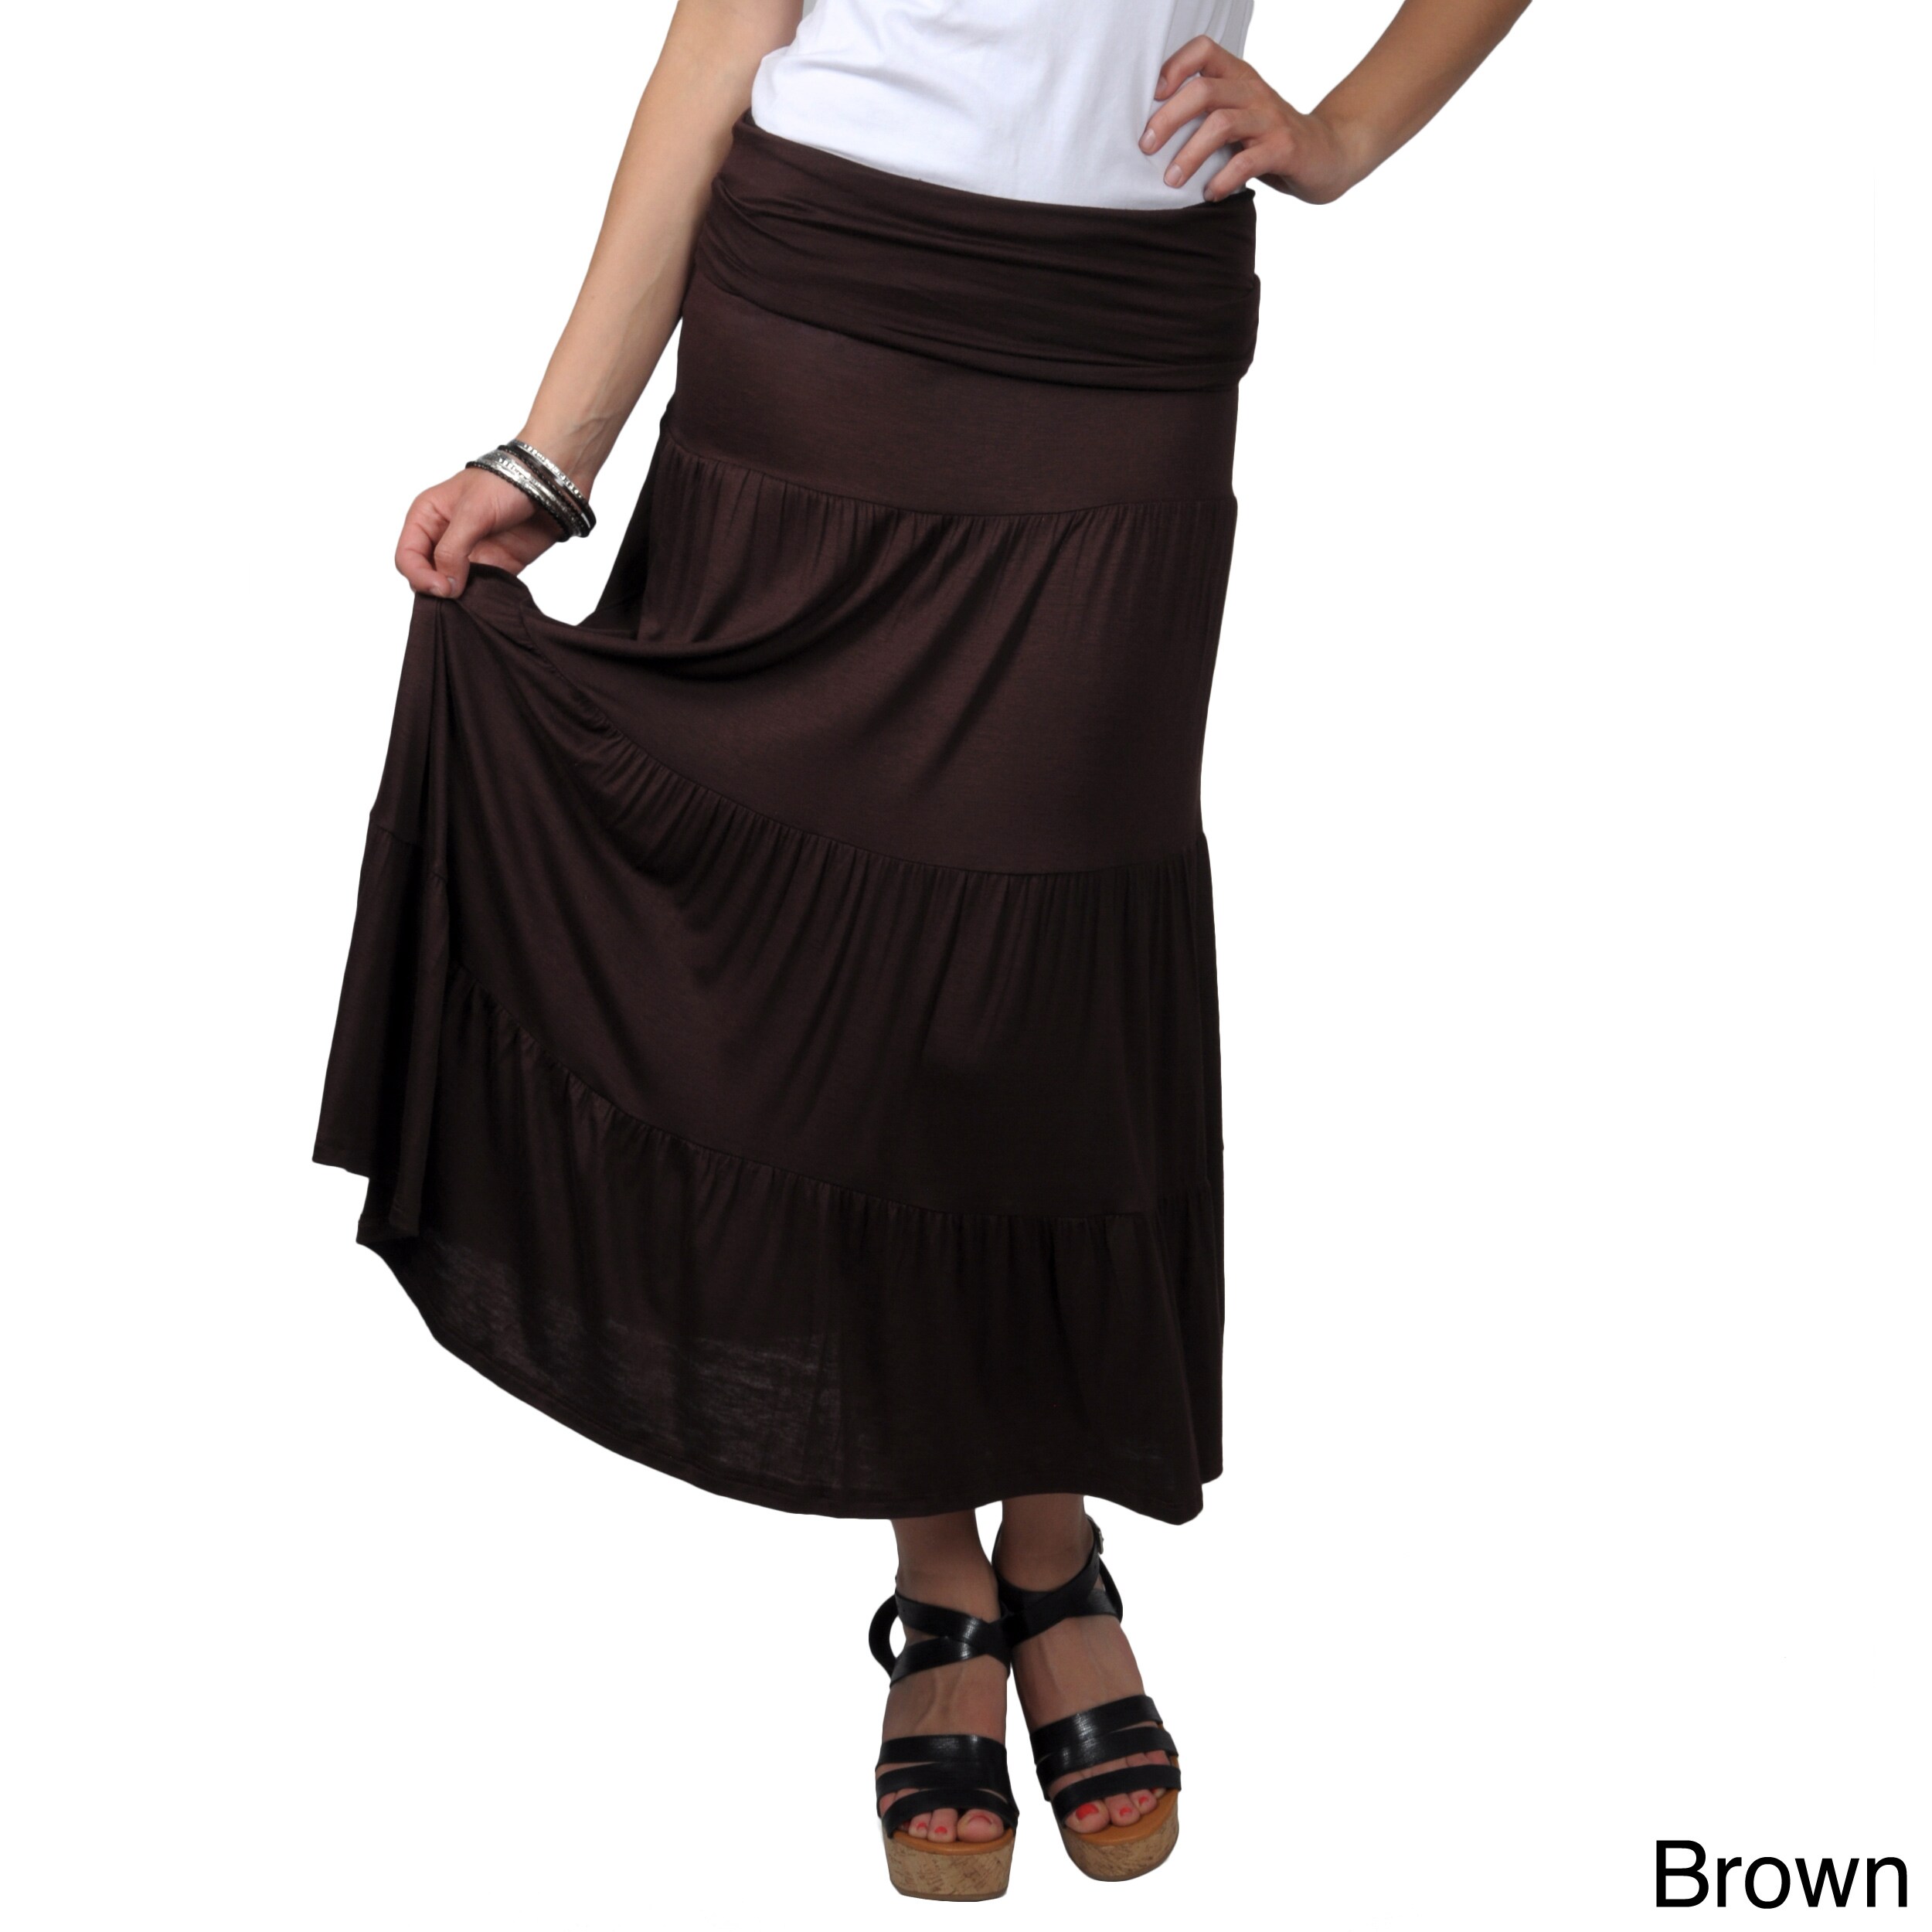 Journee Collection Juniors Long Tiered Sleeveless Skirt dress